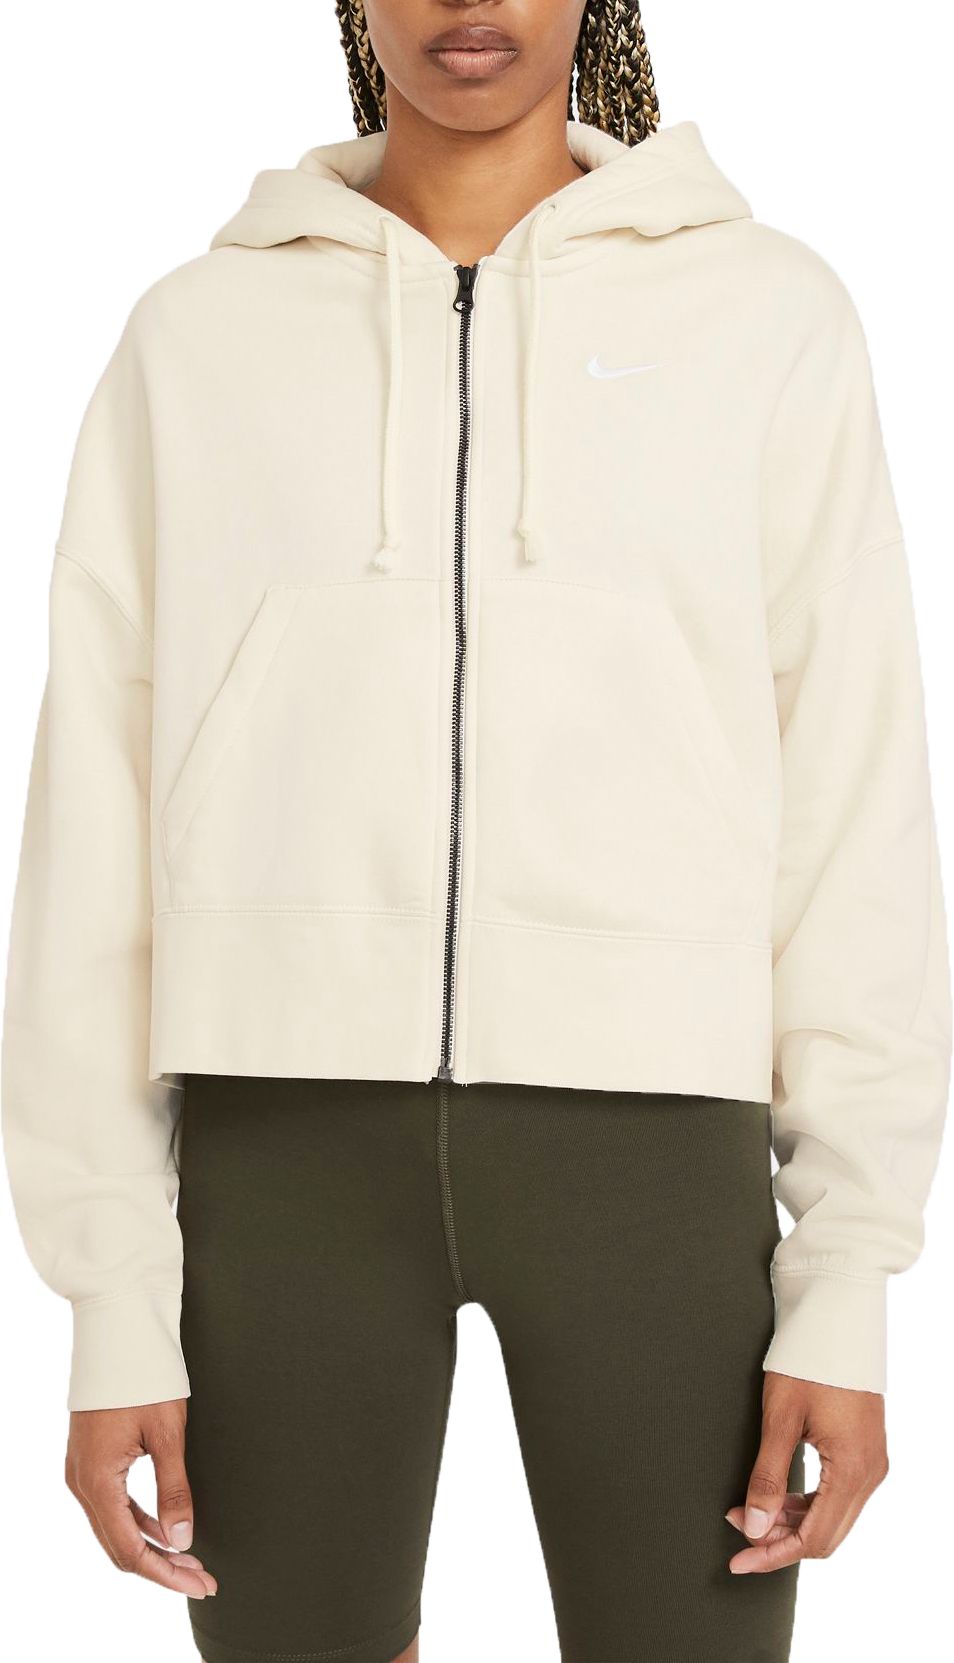 nike sportswear women's fleece hoodie